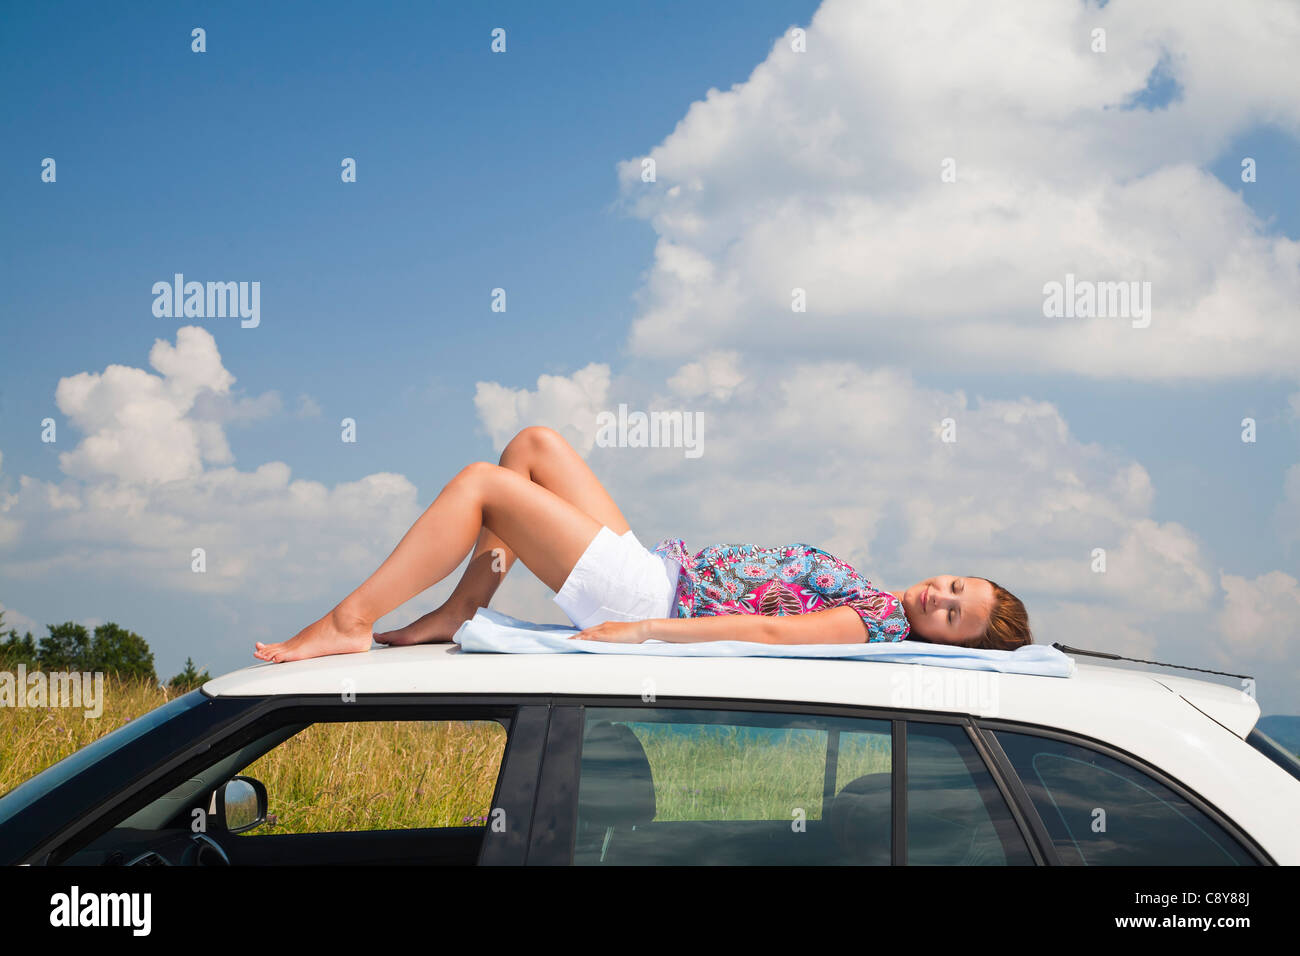 Jeune femme endormie sur toit de voiture Banque D'Images